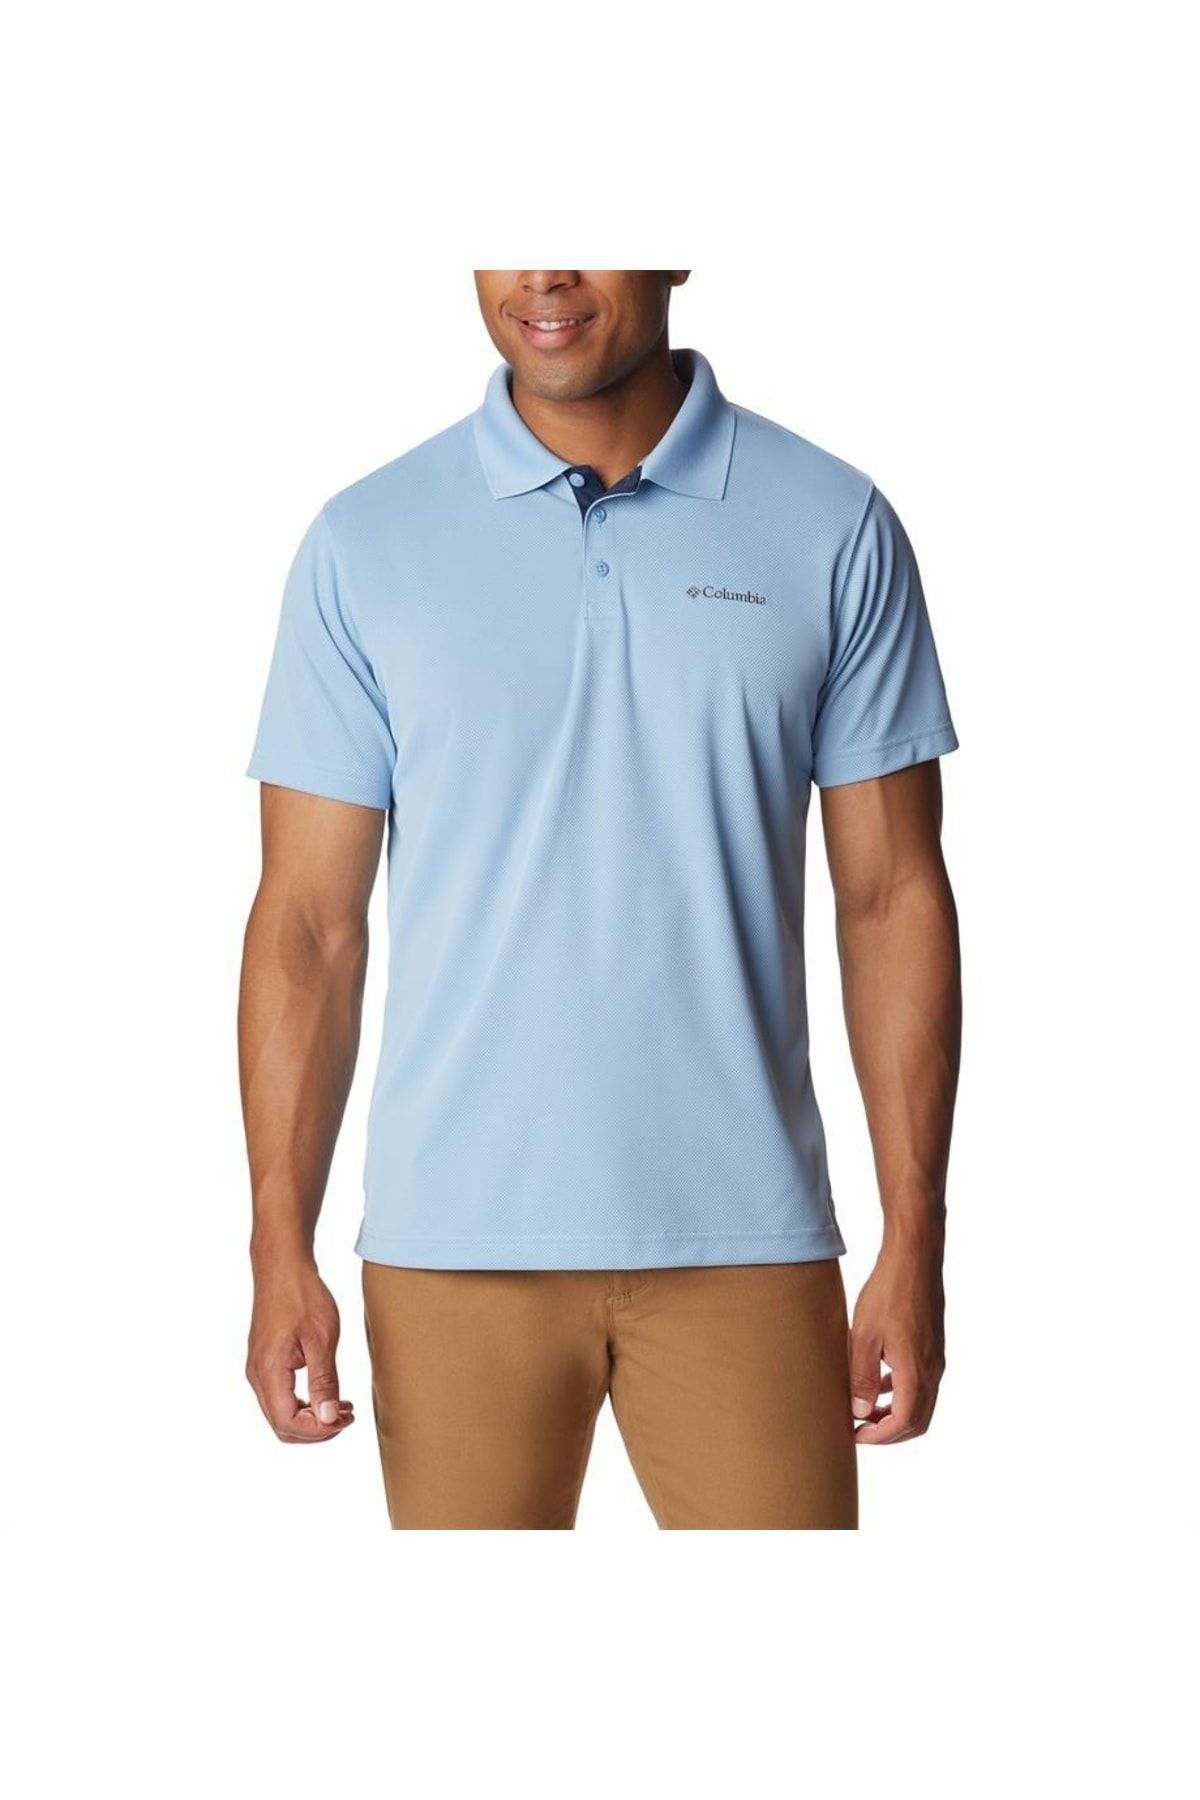 Columbia Utilizer Erkek Kısa Kollu Polo Tişört